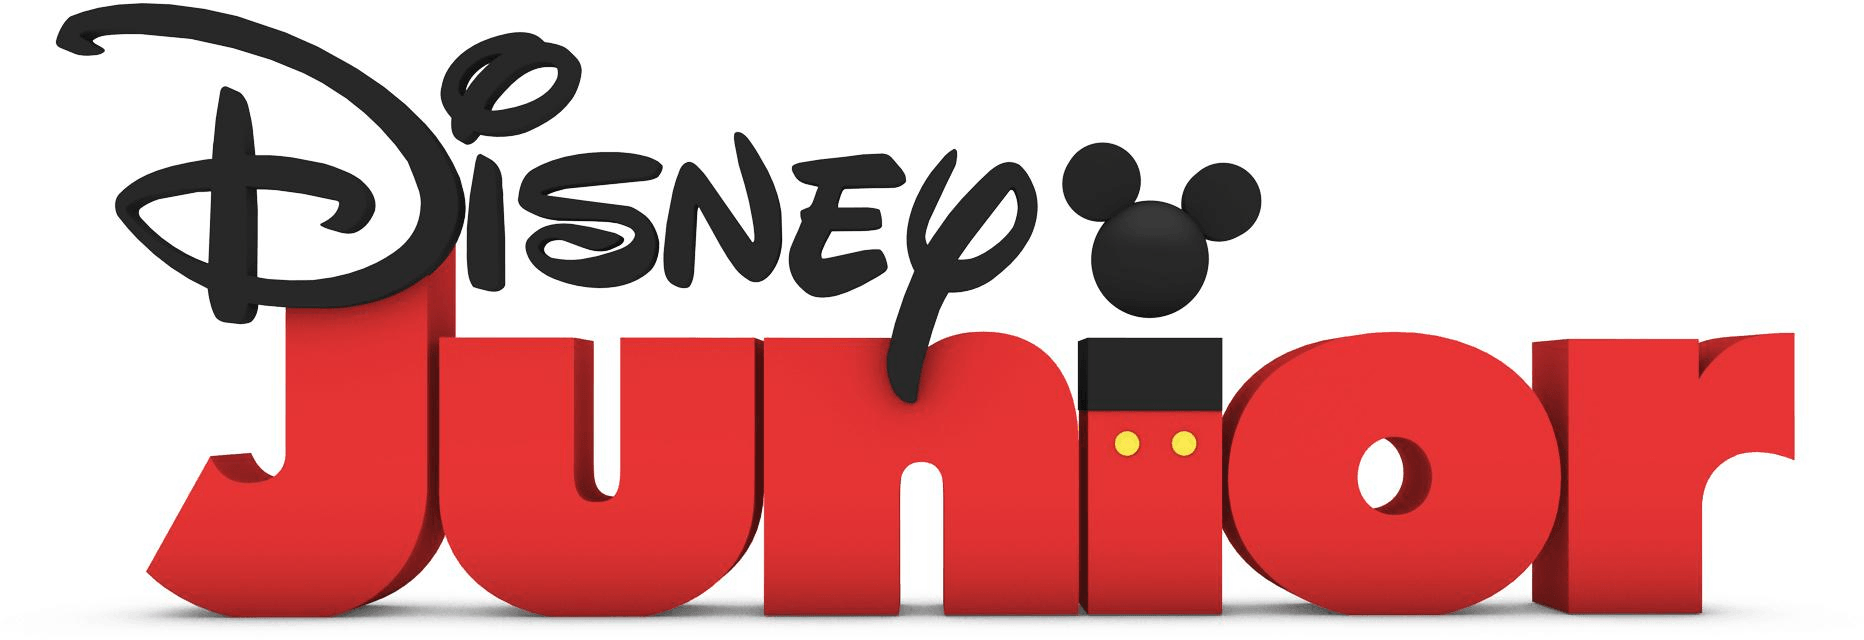 Disney Junior Original Logo - Disney Junior Originals | Logopedia | FANDOM powered by Wikia